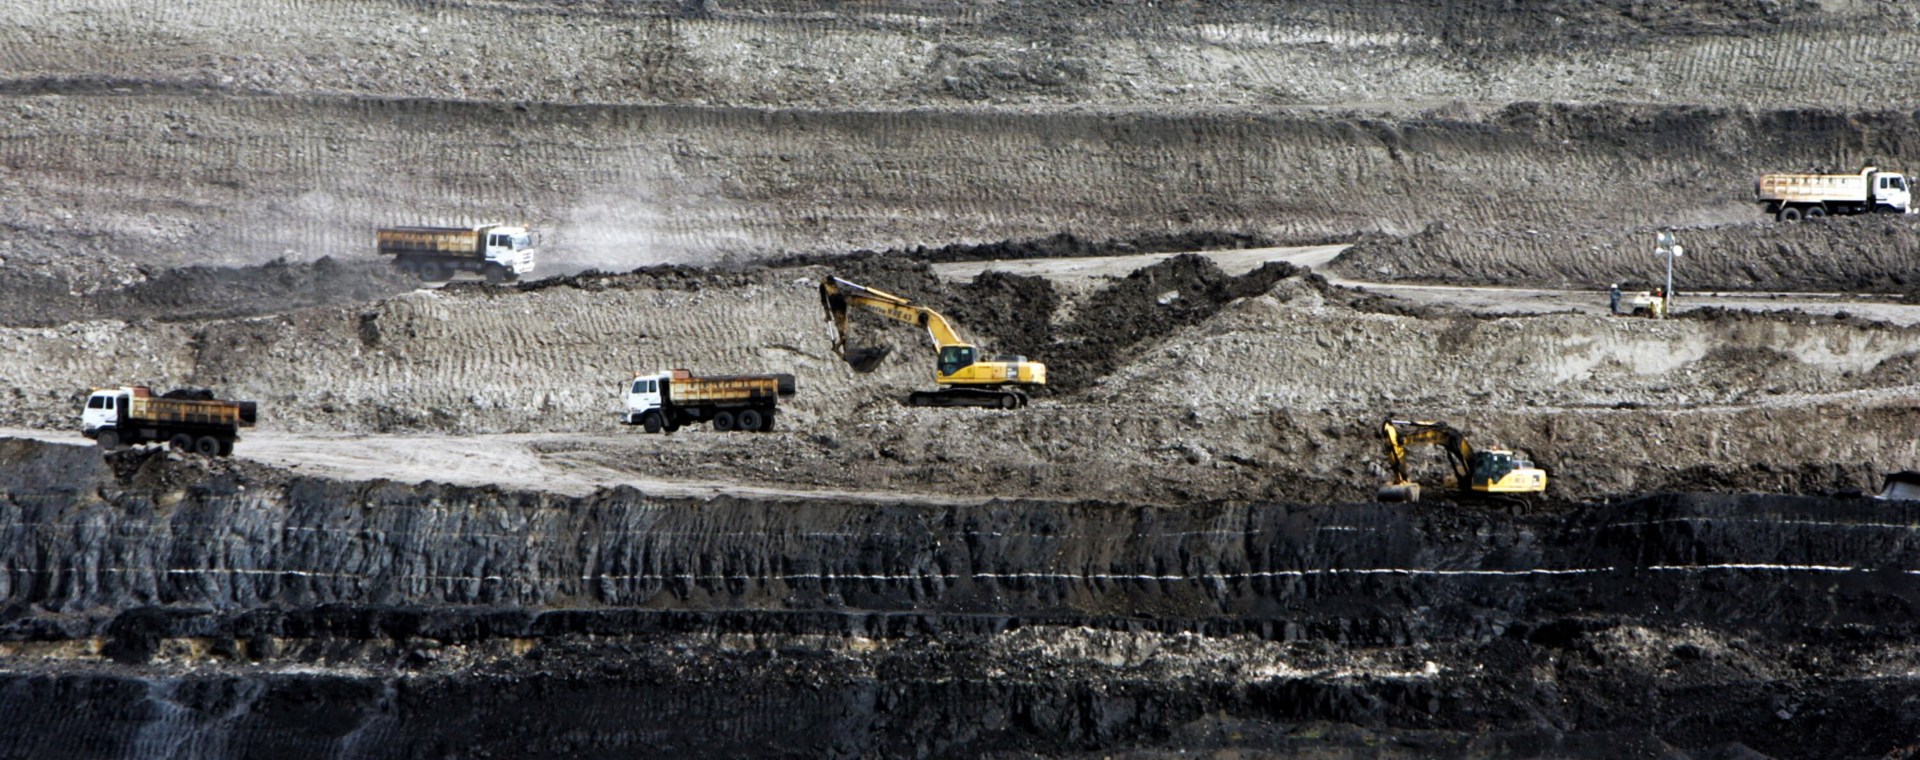  Harga Batu Bara Terkoreksi 33%, Bukit Asam (PTBA) Minta Pemerintah Terapkan MIP